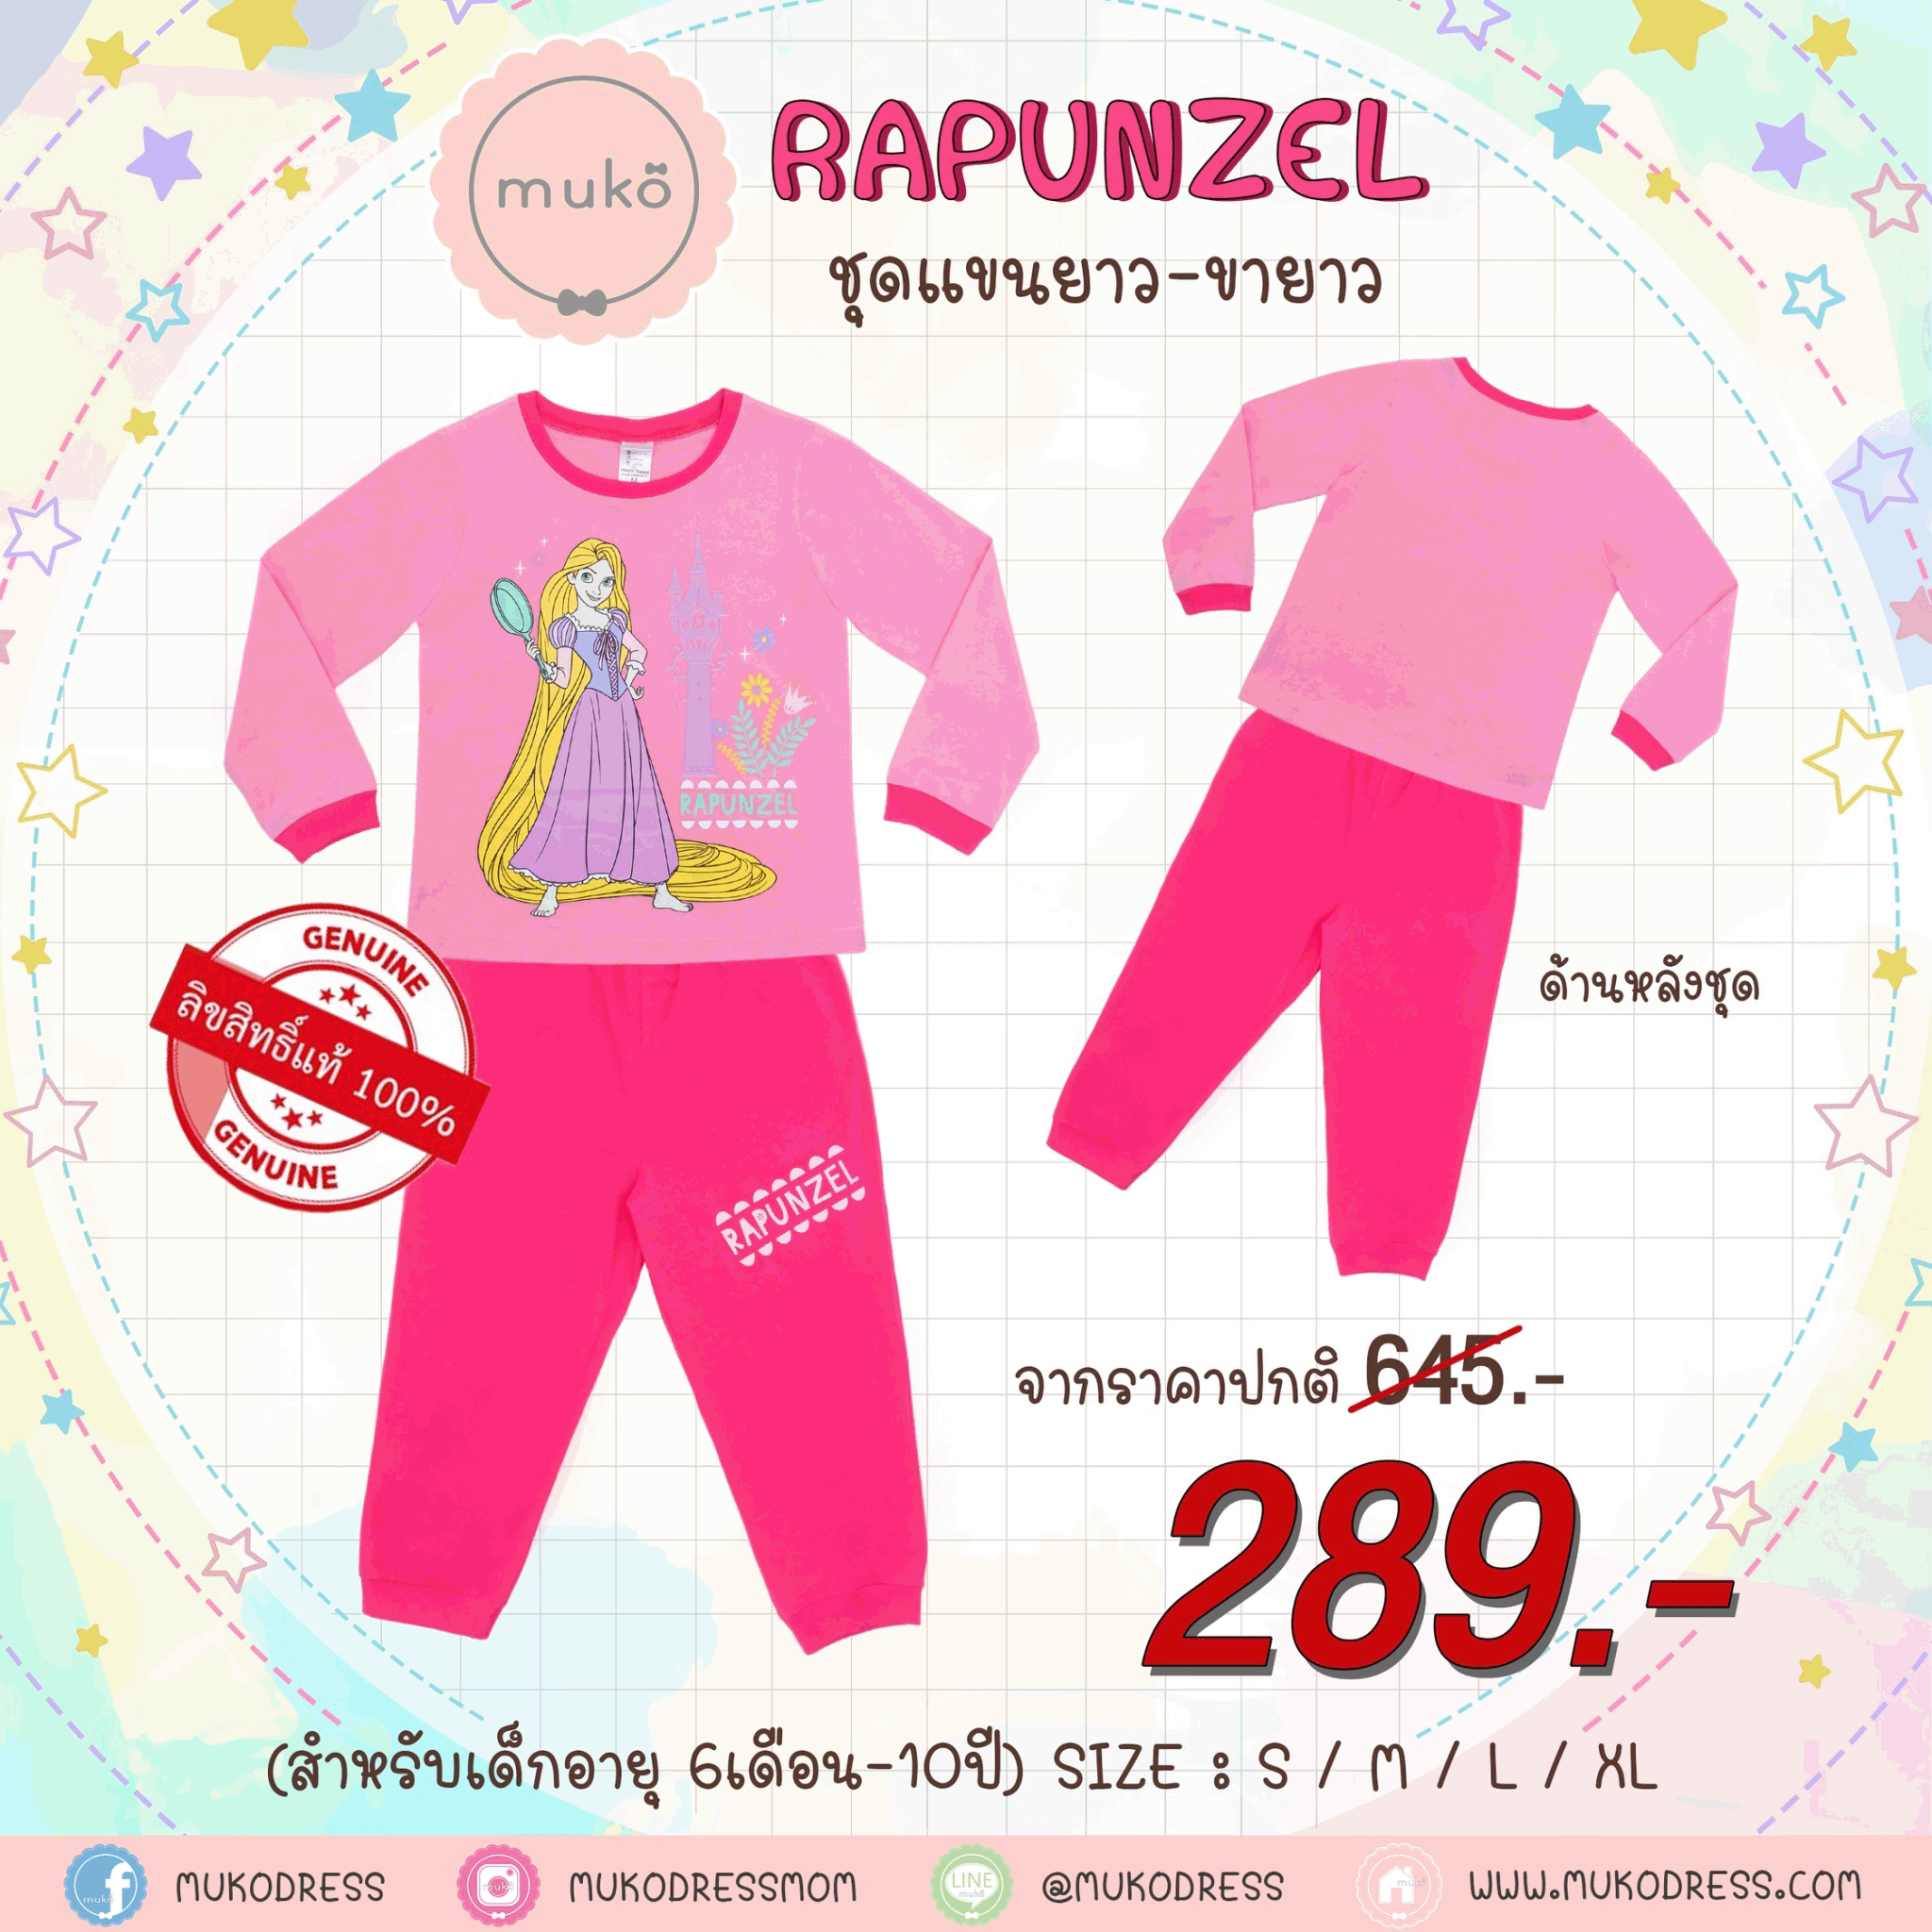 ชุดเด็ก 4-5 ขวบ แขนยาว-ขายาว (Size S) DPC127-10-XL-Pink S ลาย เจ้าหญิงราพันเซล Rapunzel สีชมพู